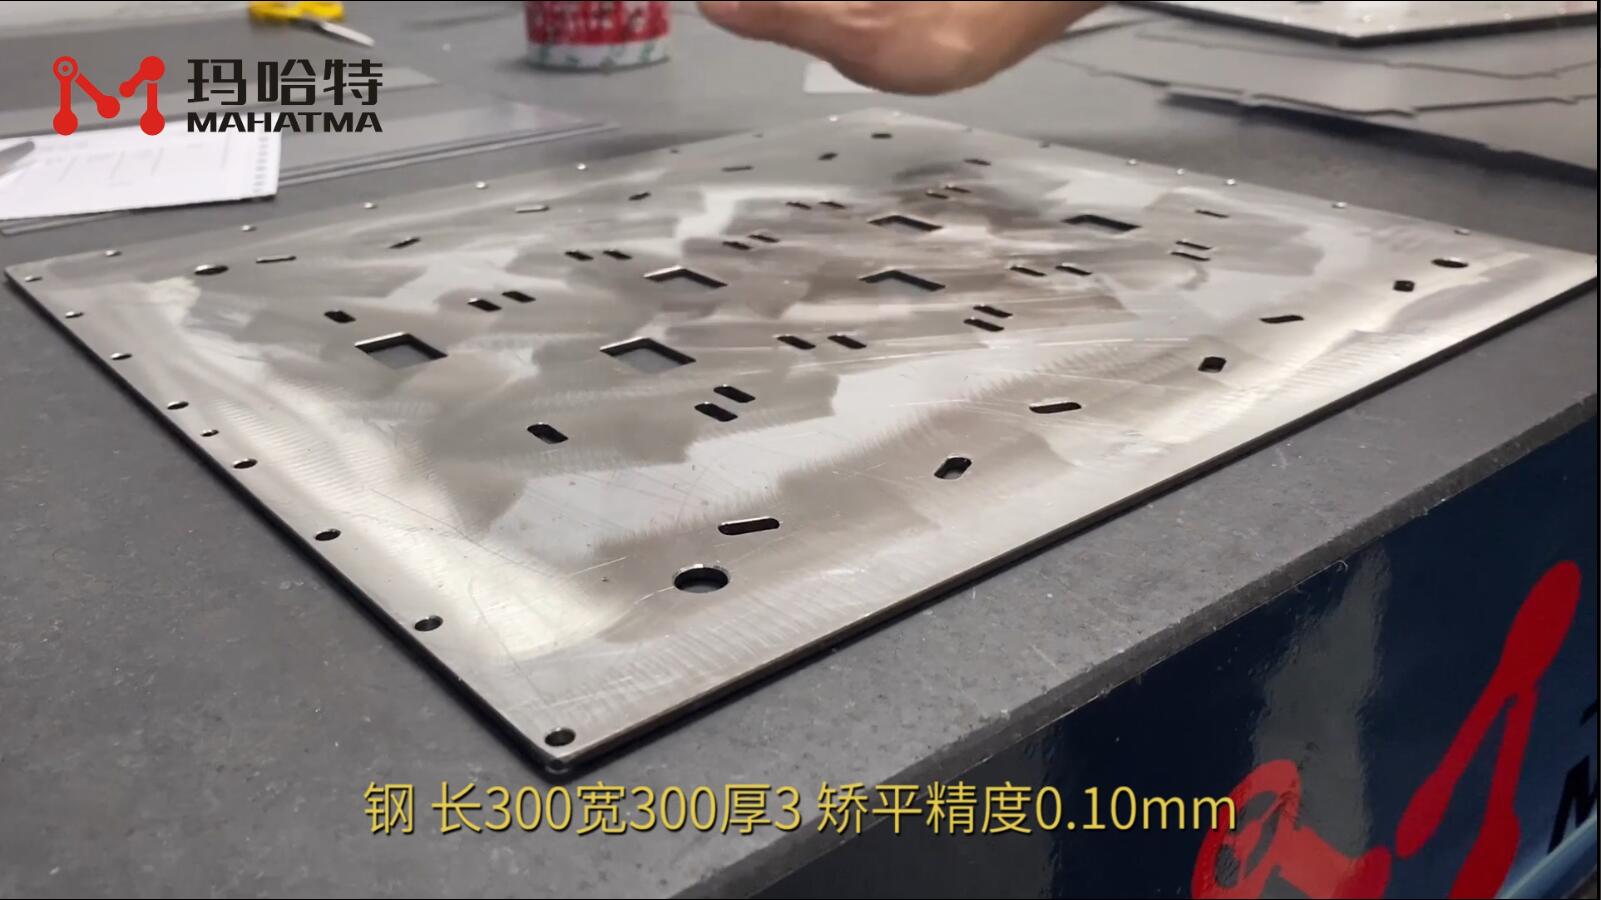 钢 MHT80-800 正方形  长300宽300厚3 矫平精度0.10mm